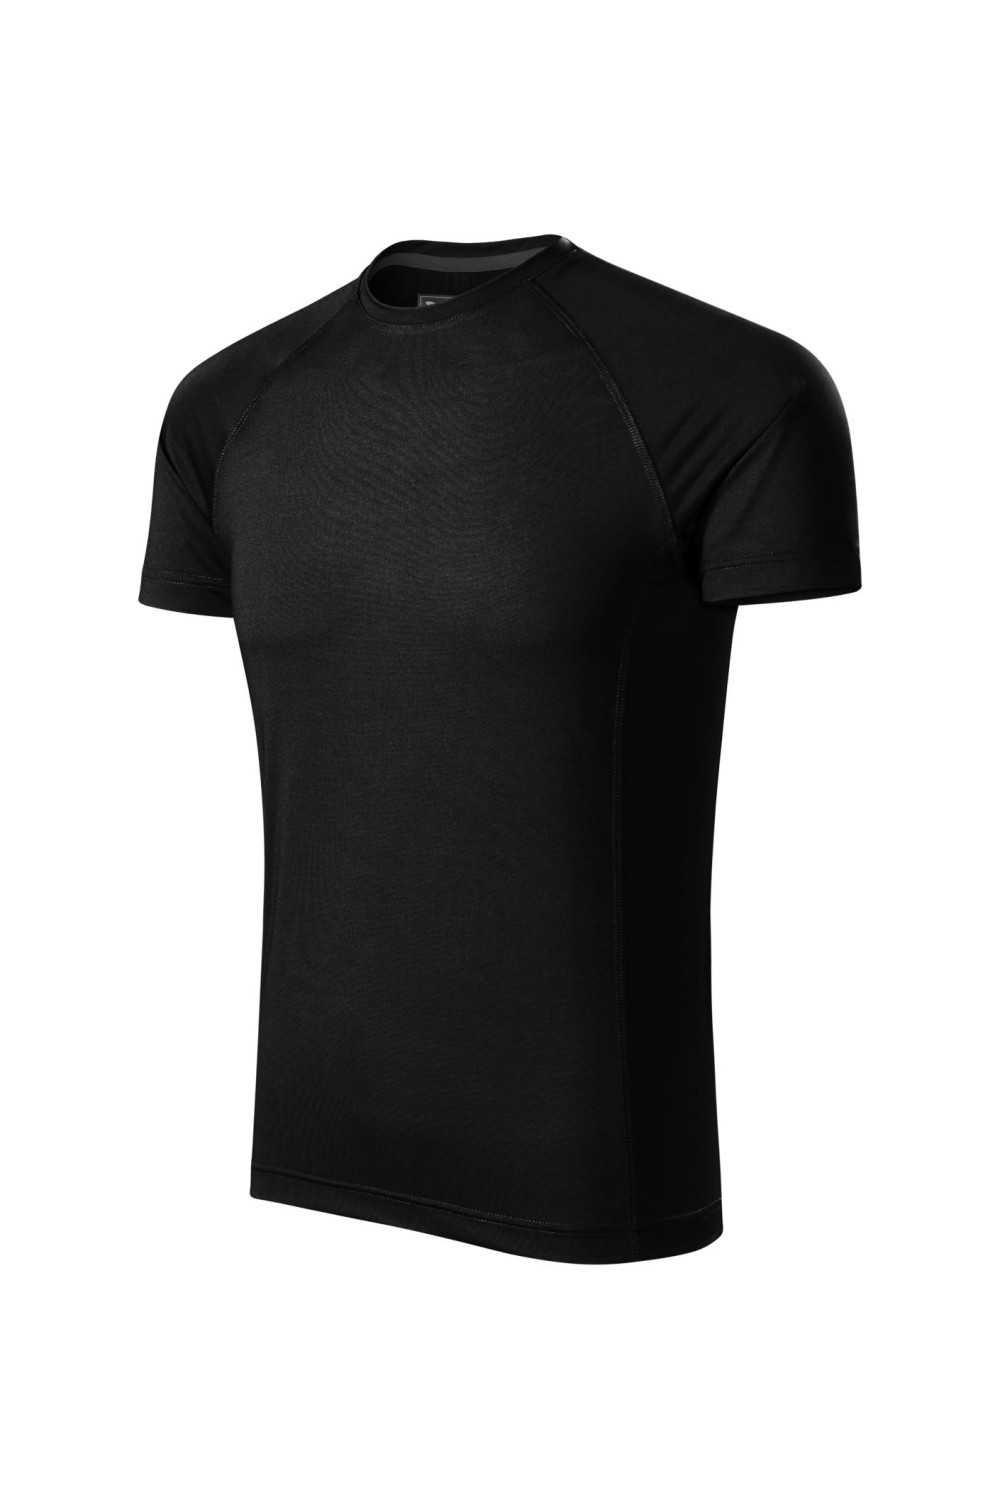 DESTINY 175 MALFINI ADLERSportowa koszulka męska t-shirt czarny